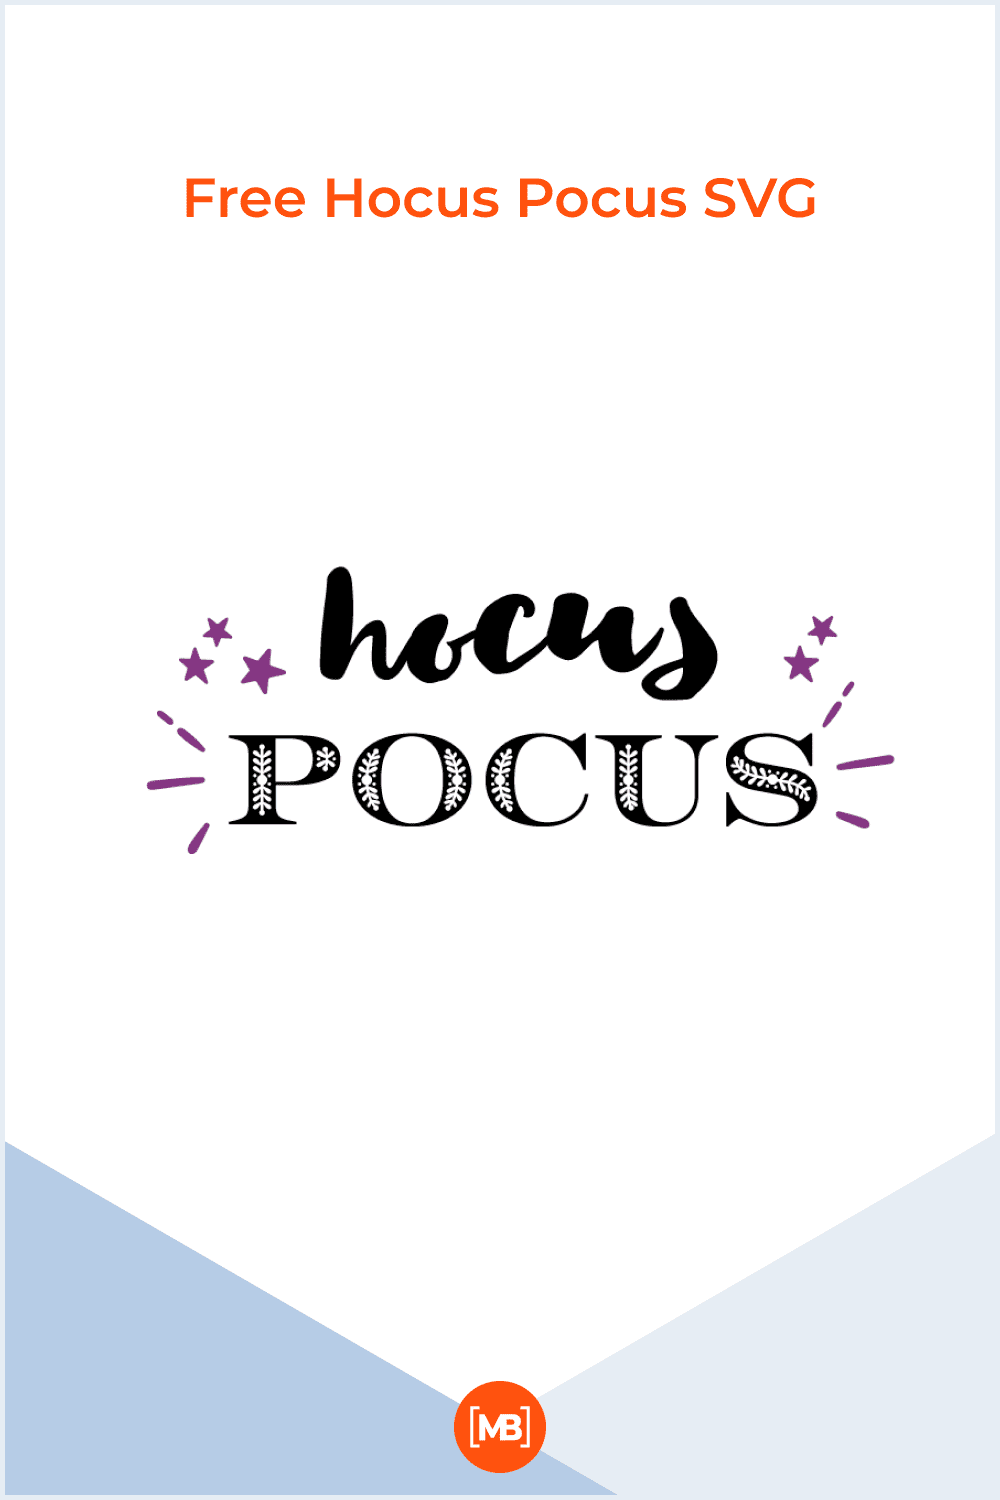 Free Hocus Pocus SVG.